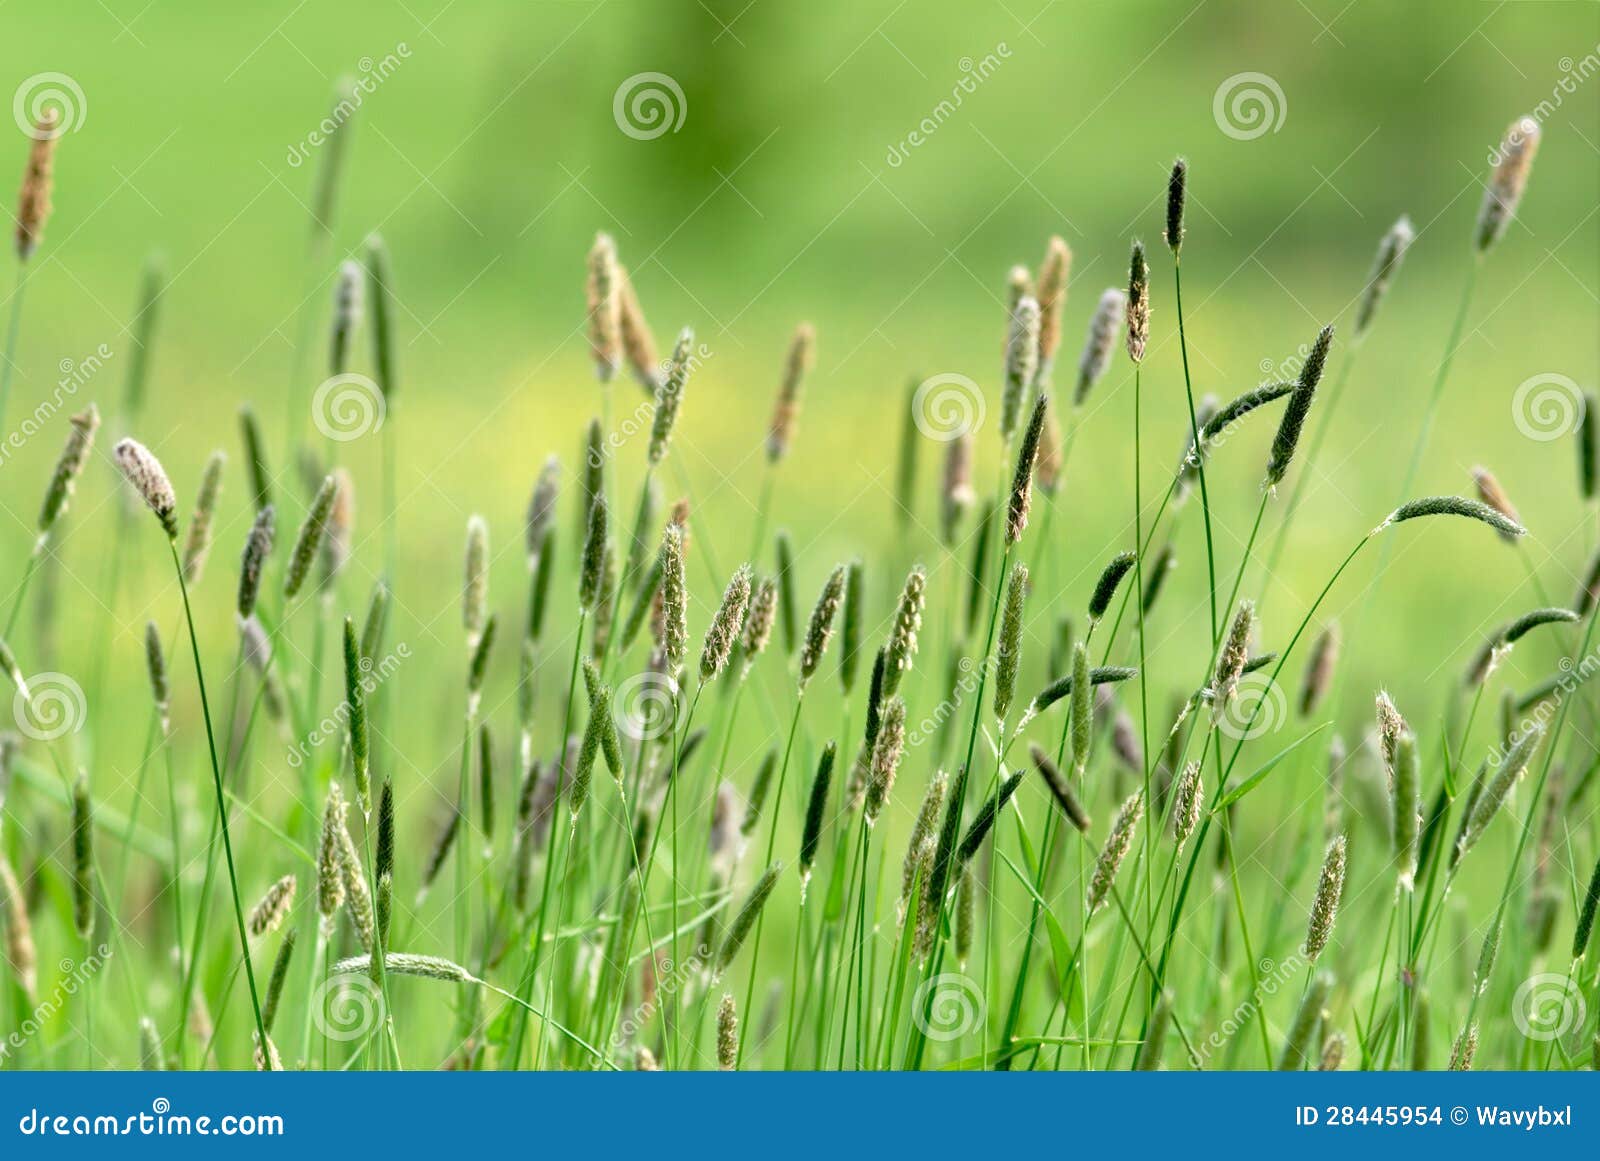 bucolic walk in the green fields